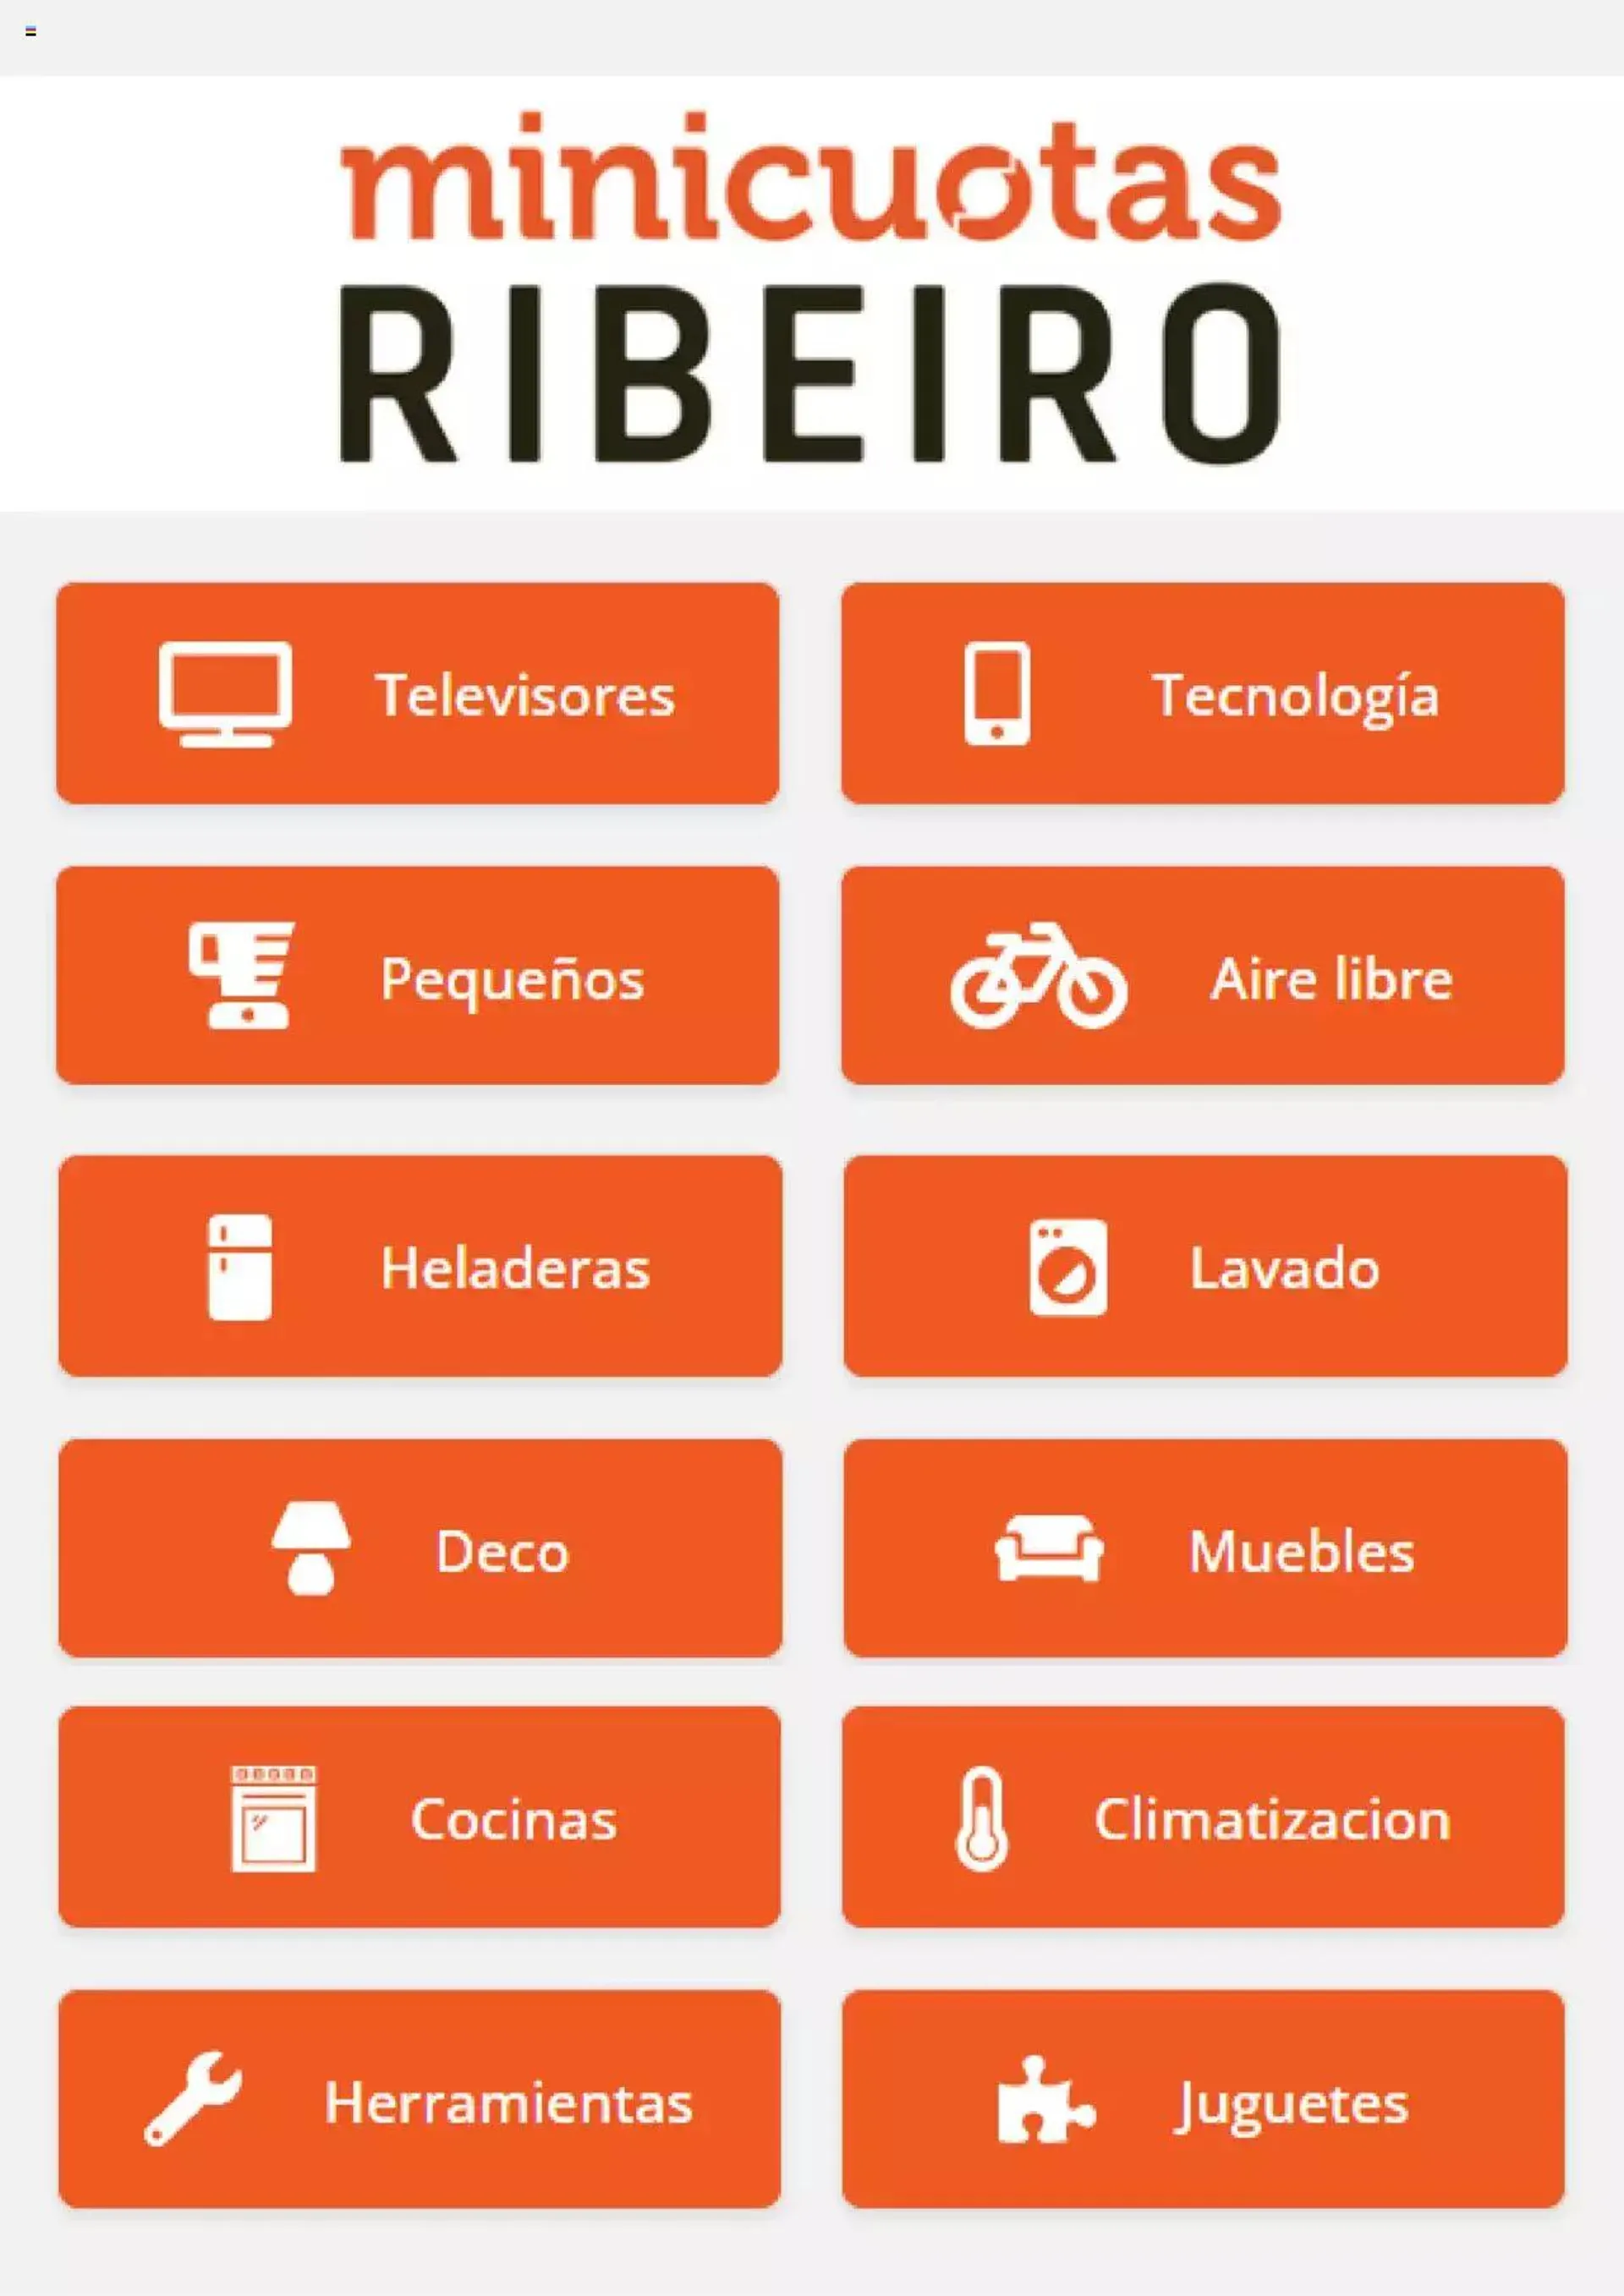 Ribeiro - Catálogo - 0